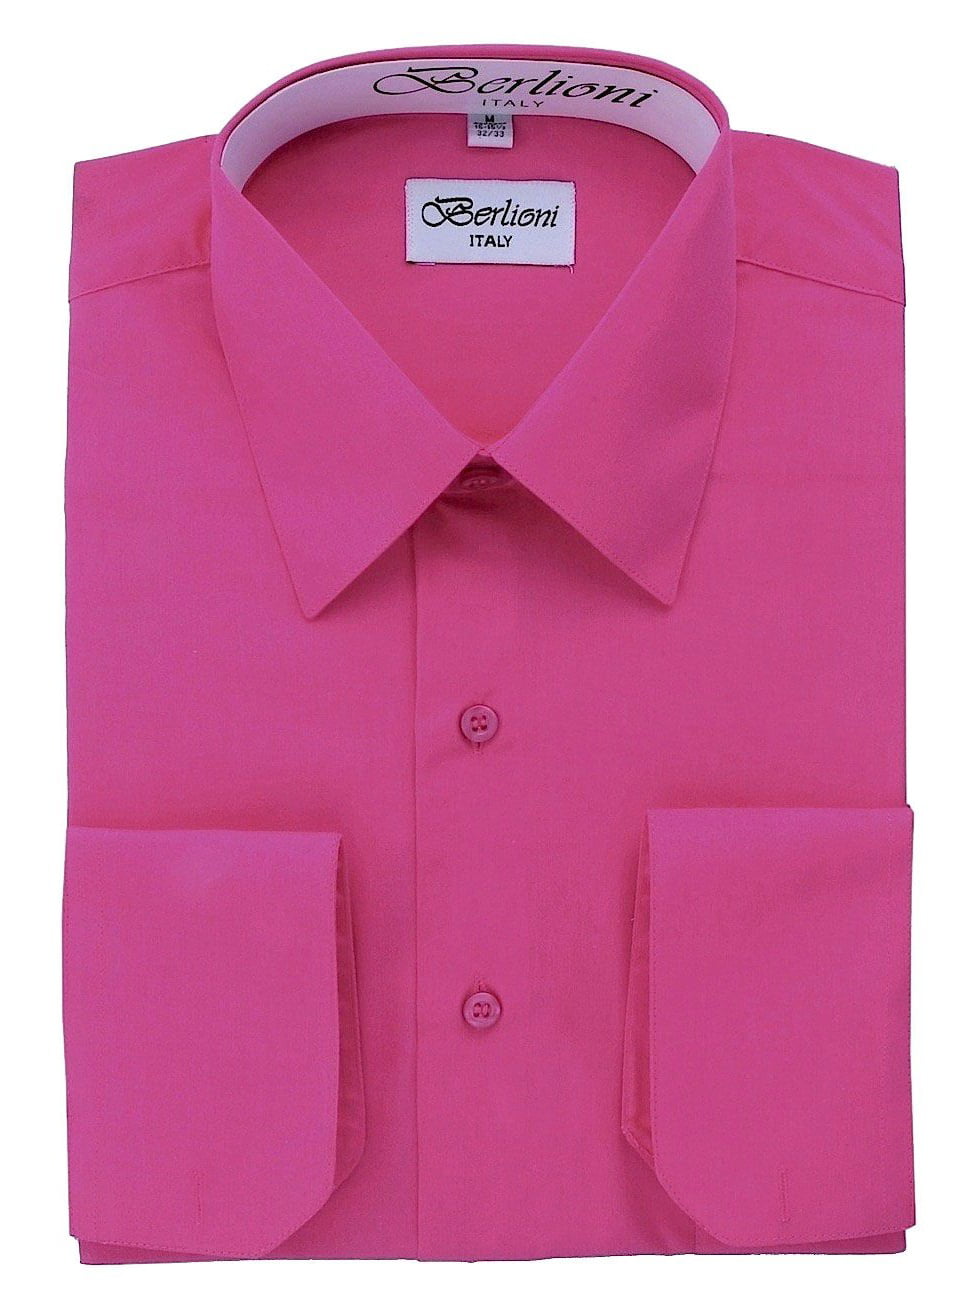 Men's Solid Color Dress Shirt - Walmart.com